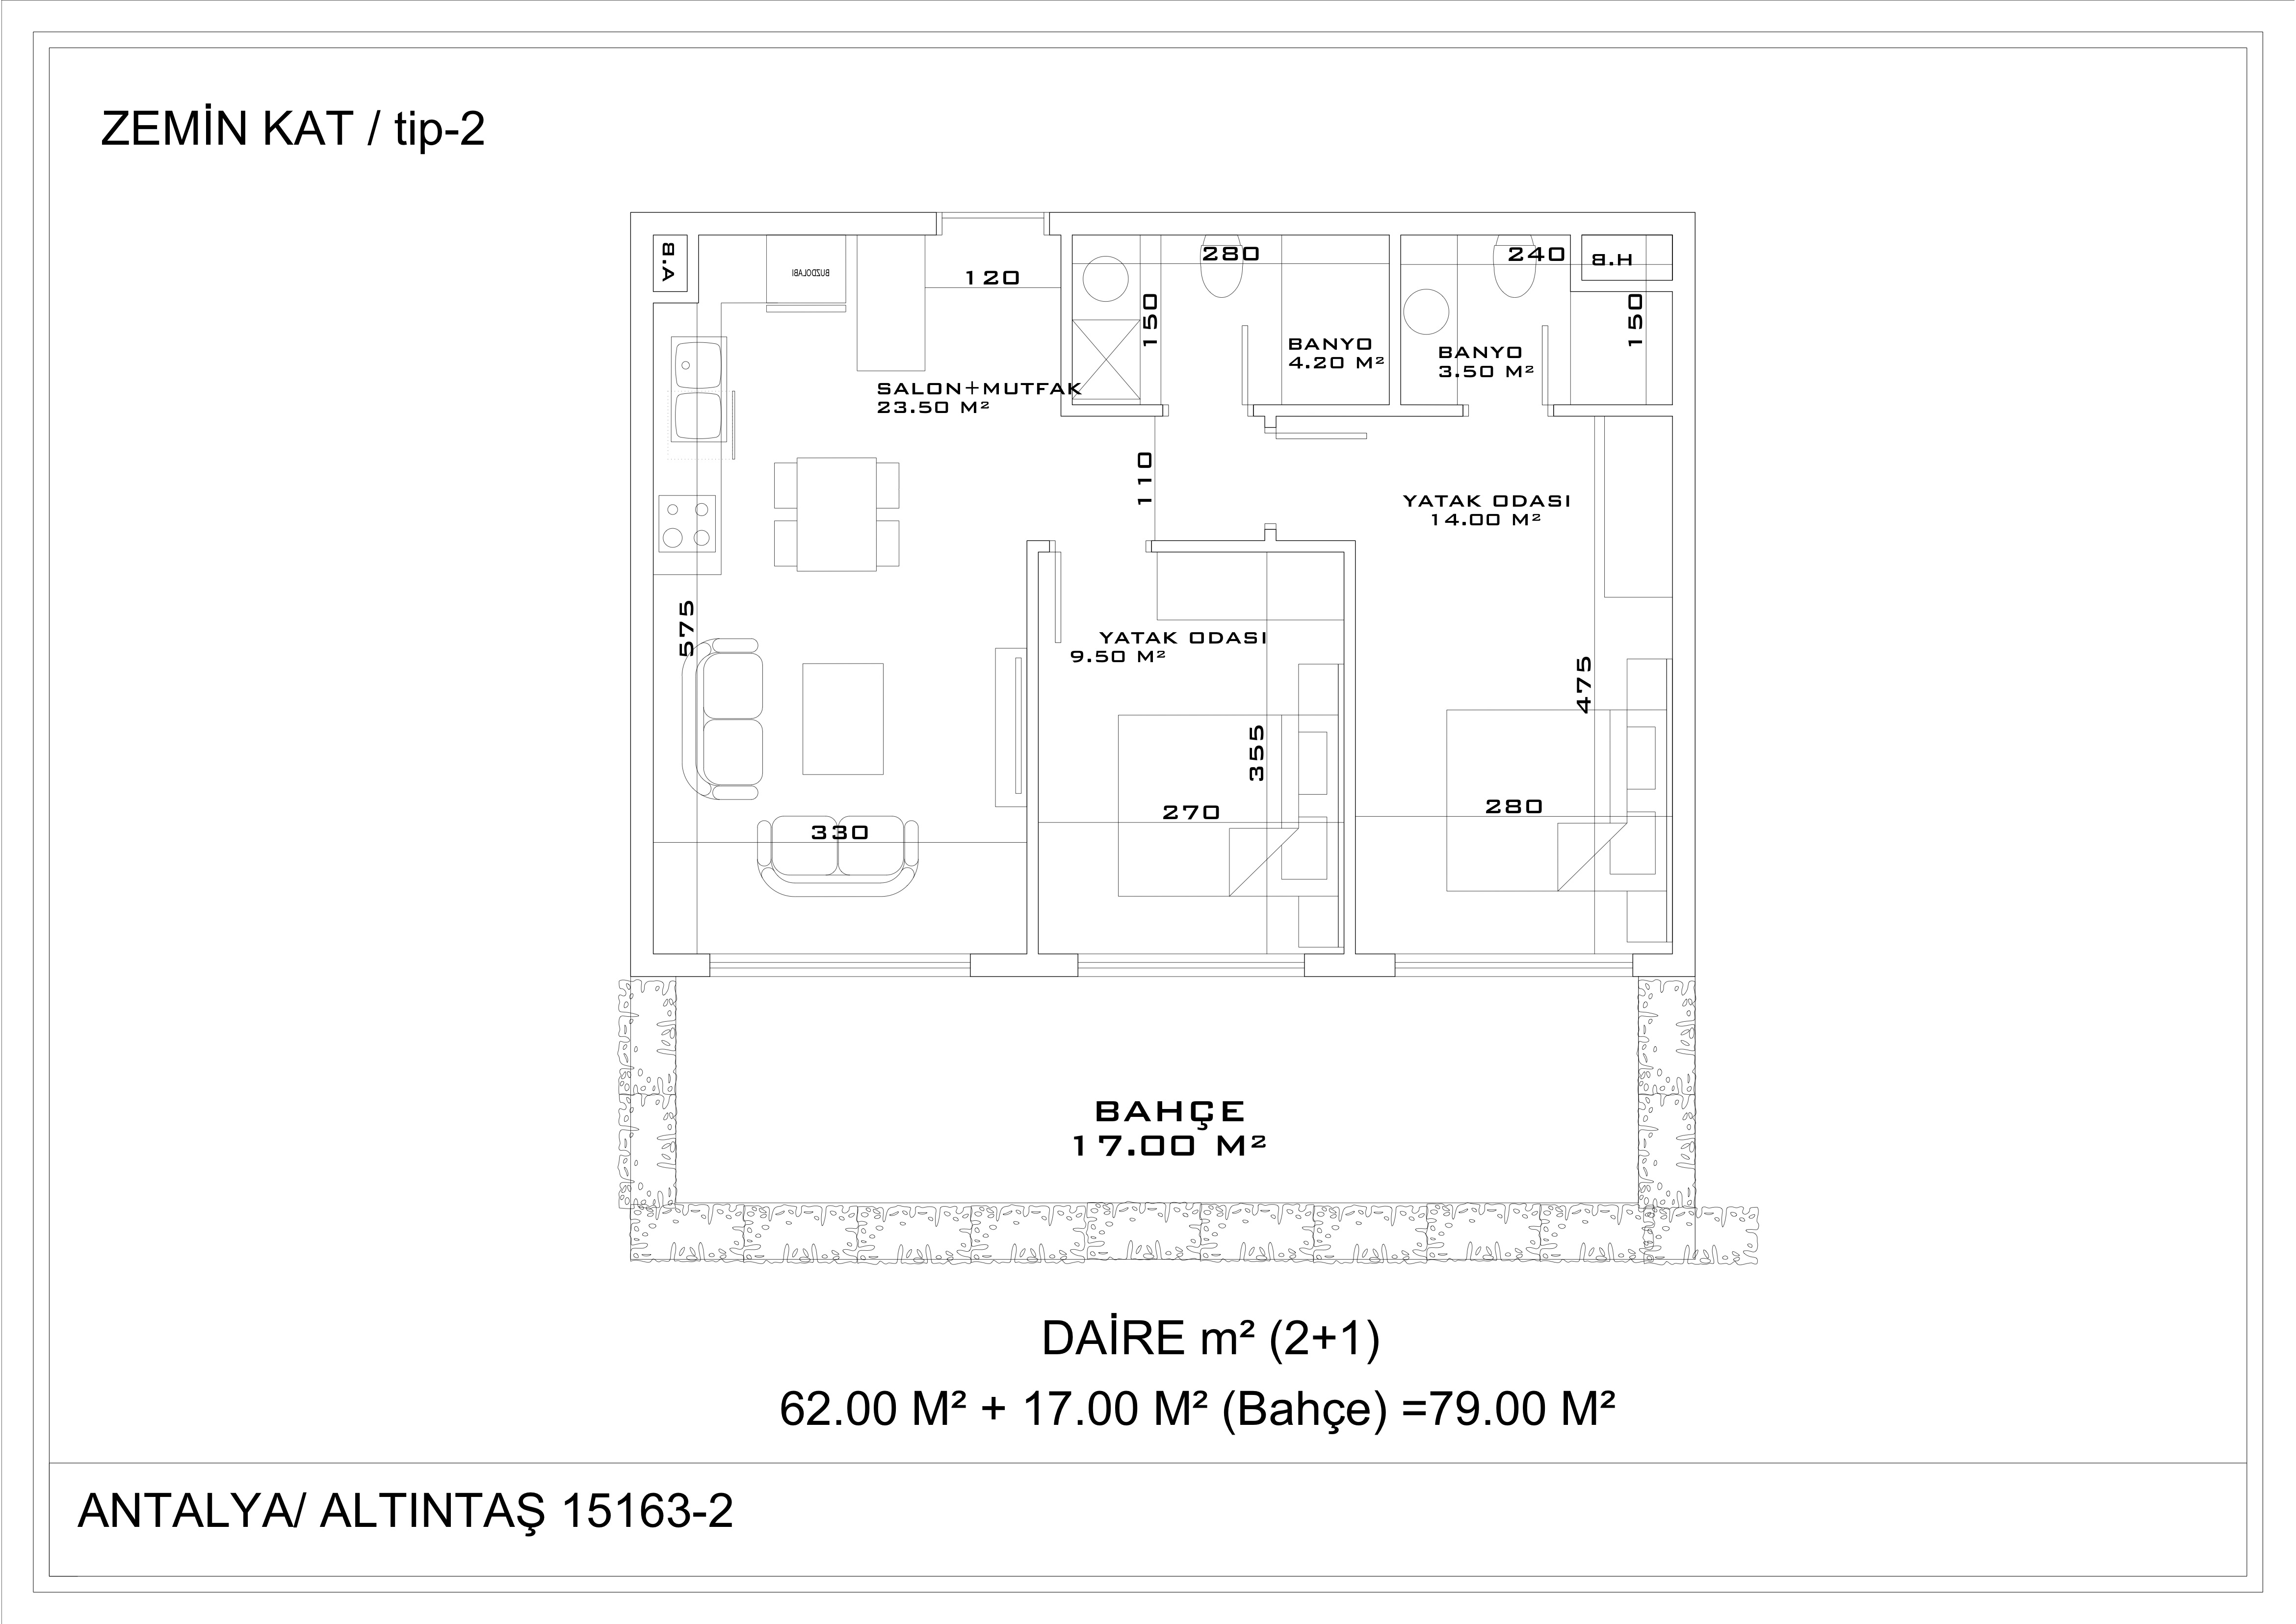 Апартаменты 2+1 в Алтынташе, жилая площадь 79м2, общая с террасой - 120м2